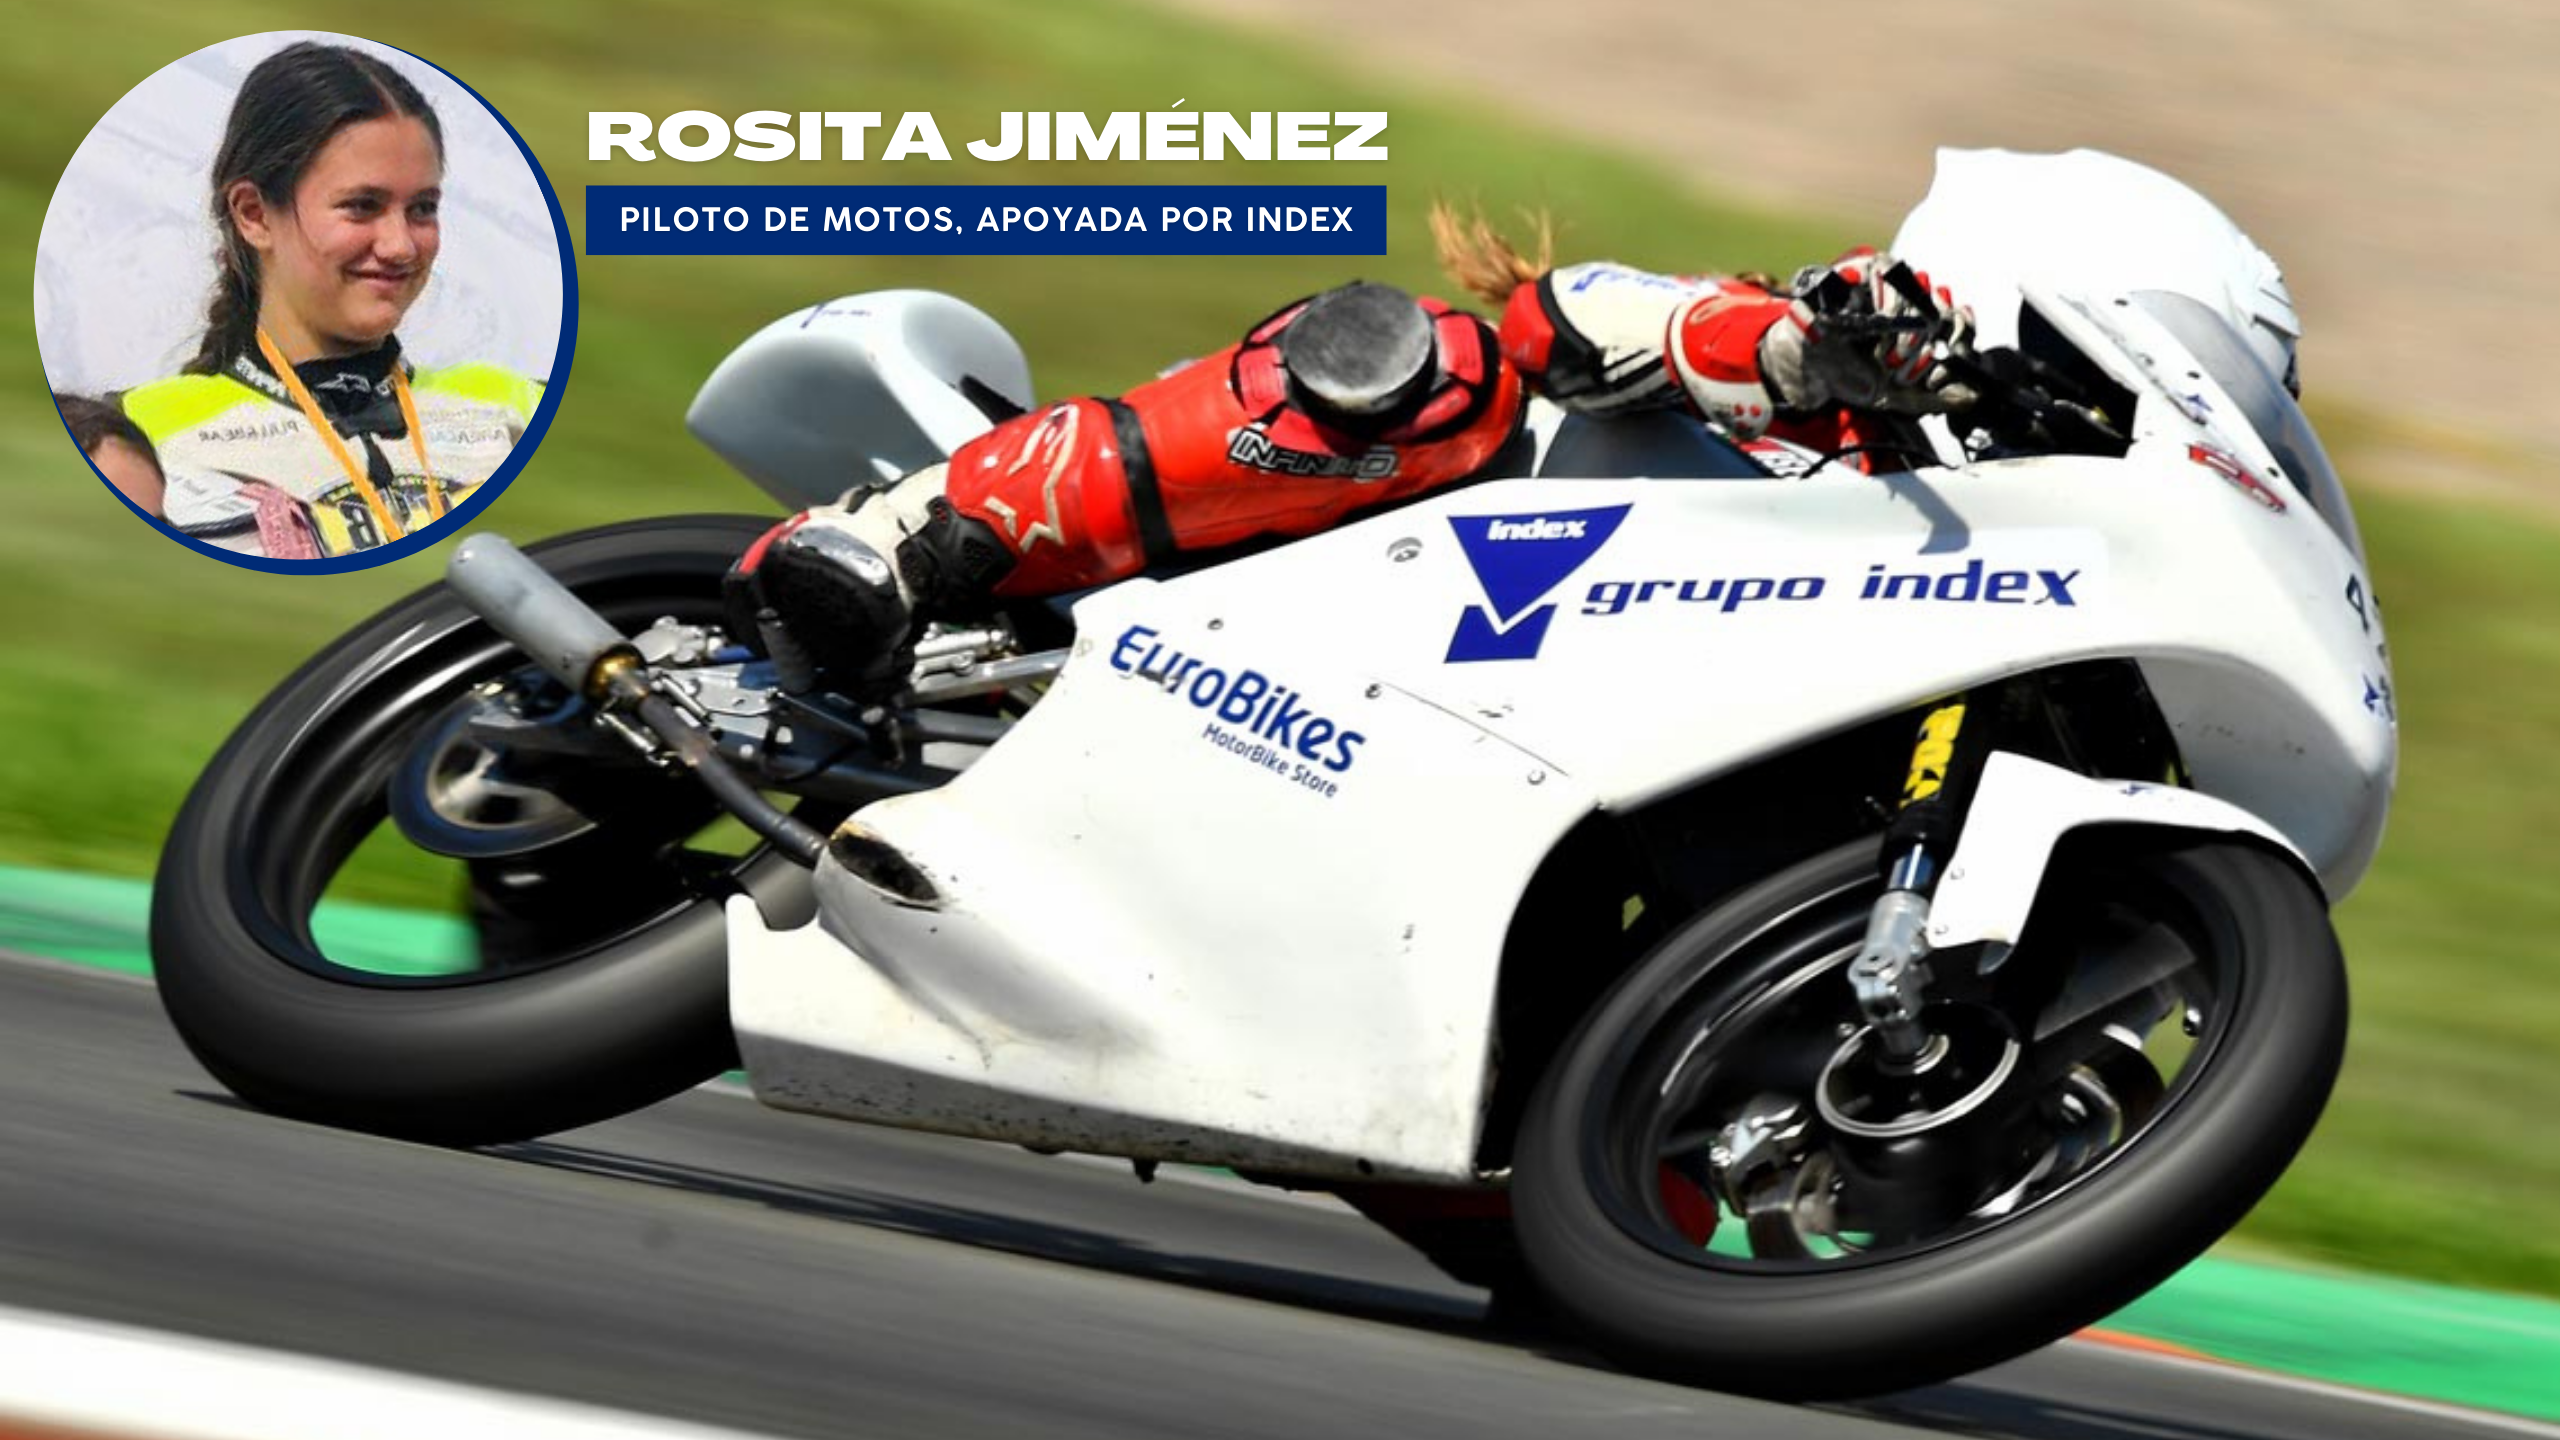 En este momento estás viendo ‘Rosita’, única chica piloto en su categoría, apoyada por Index